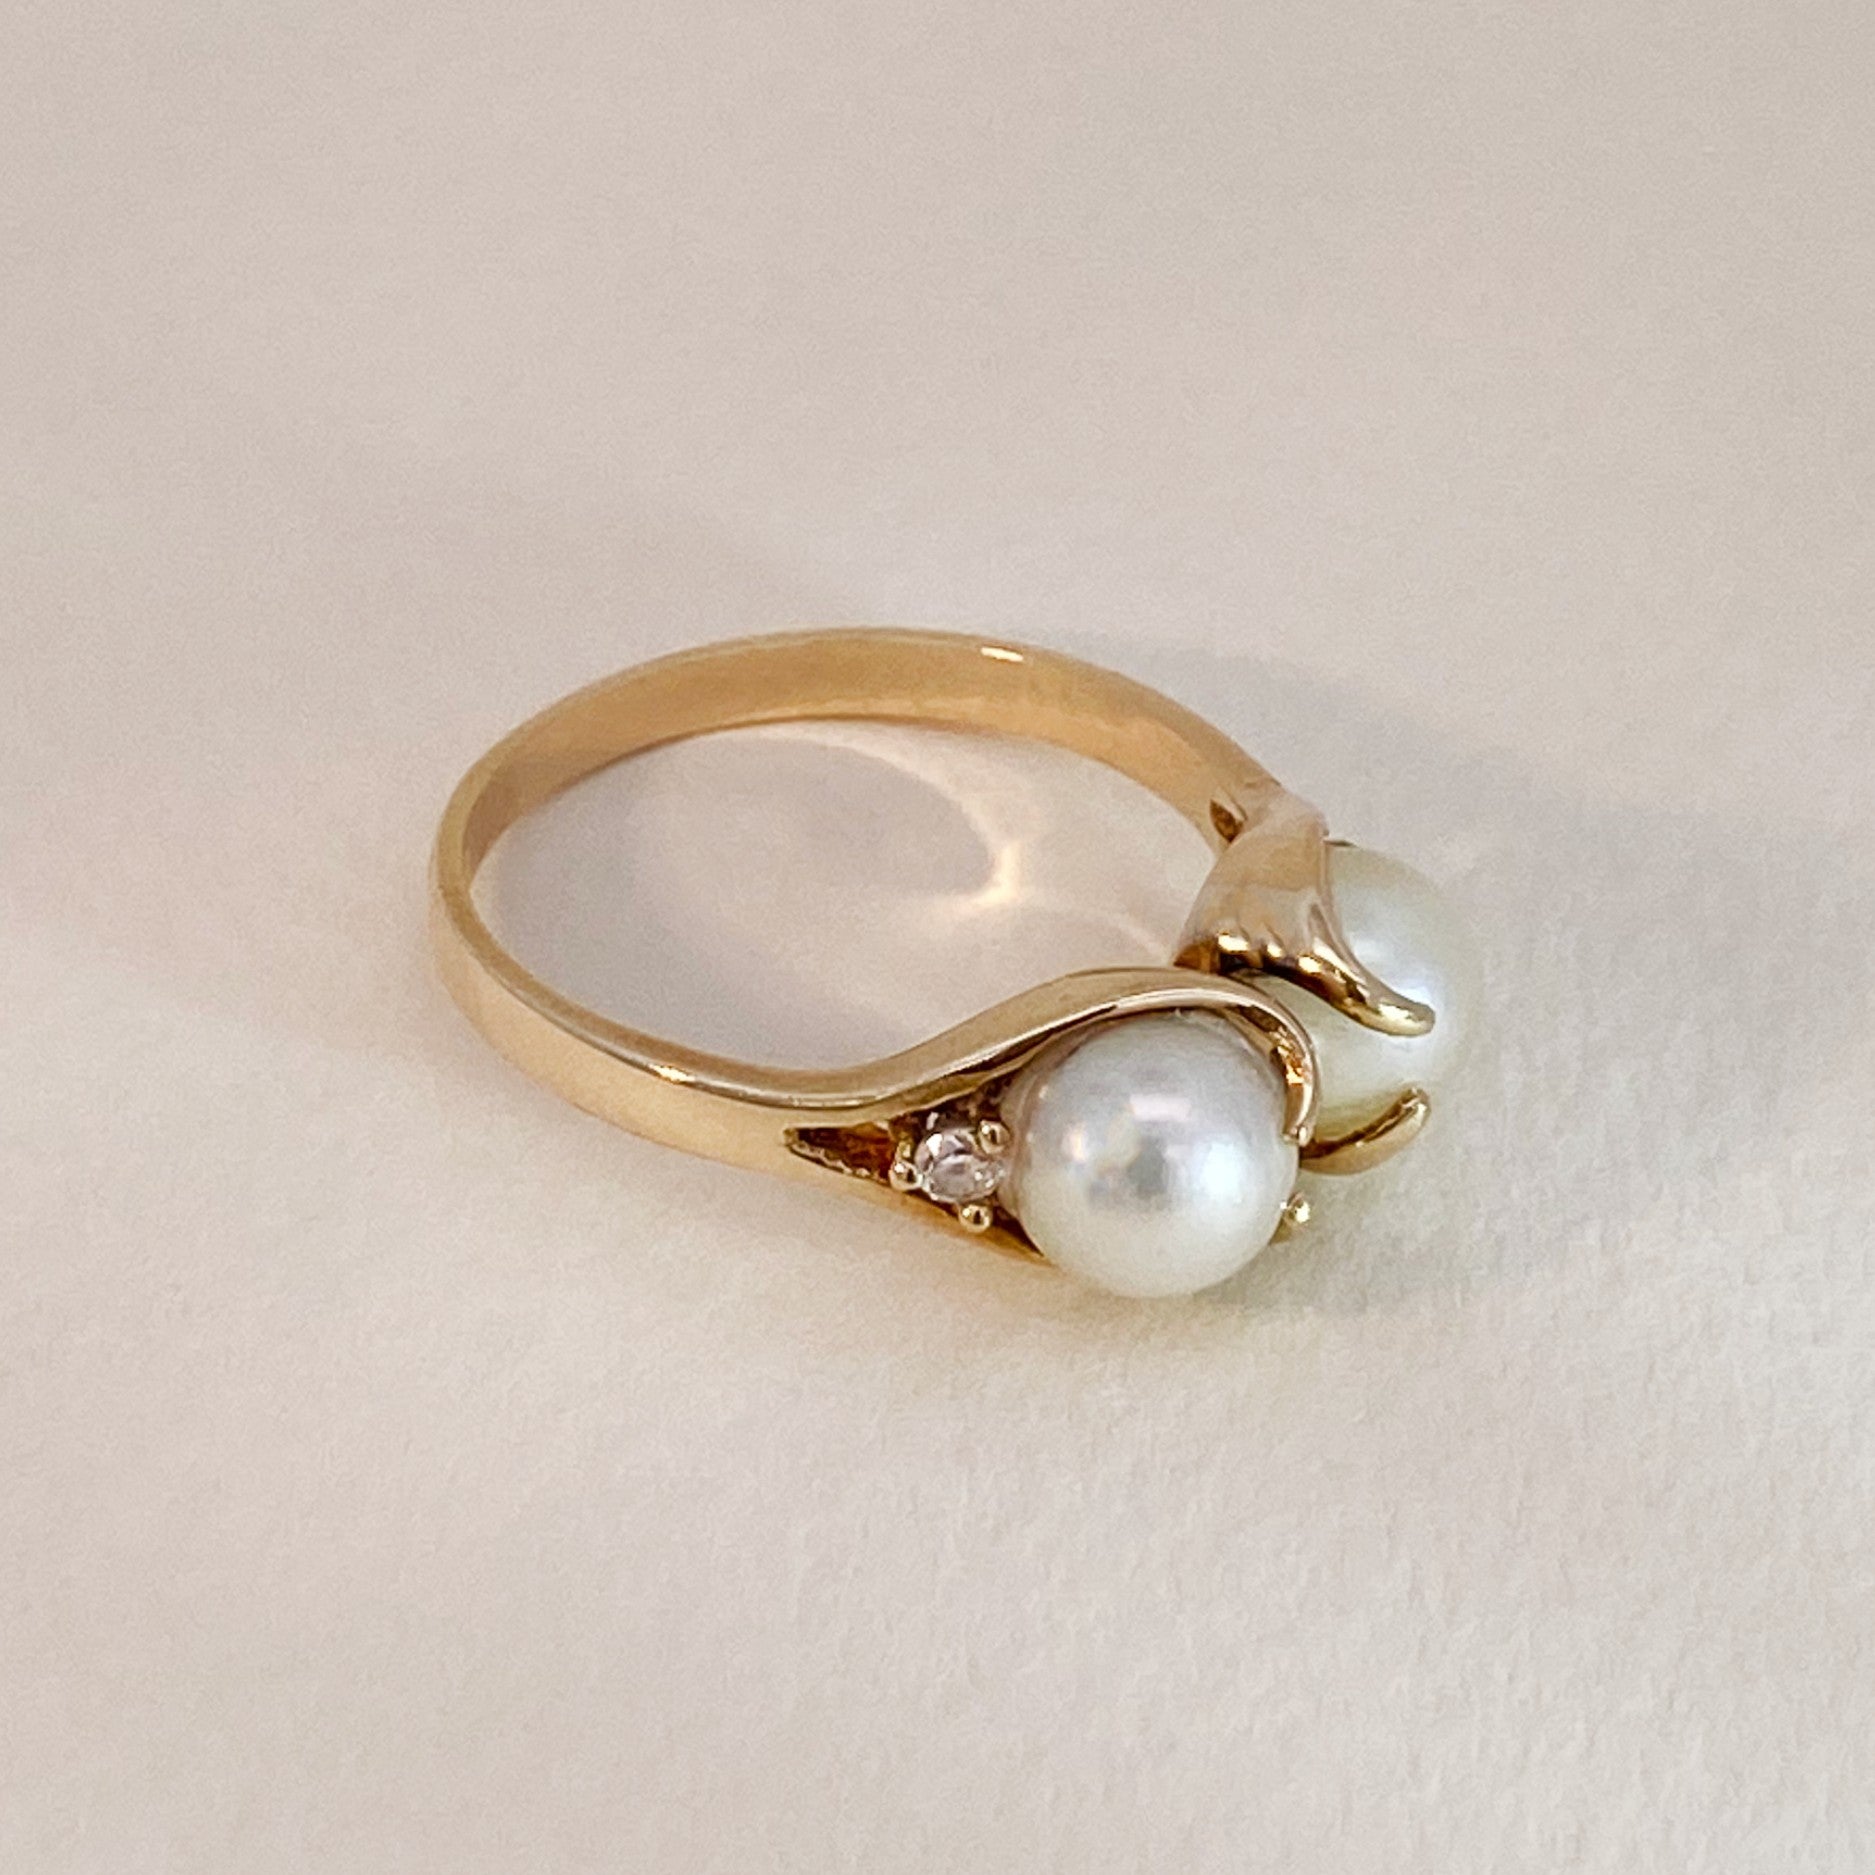 Vintage ring pearls